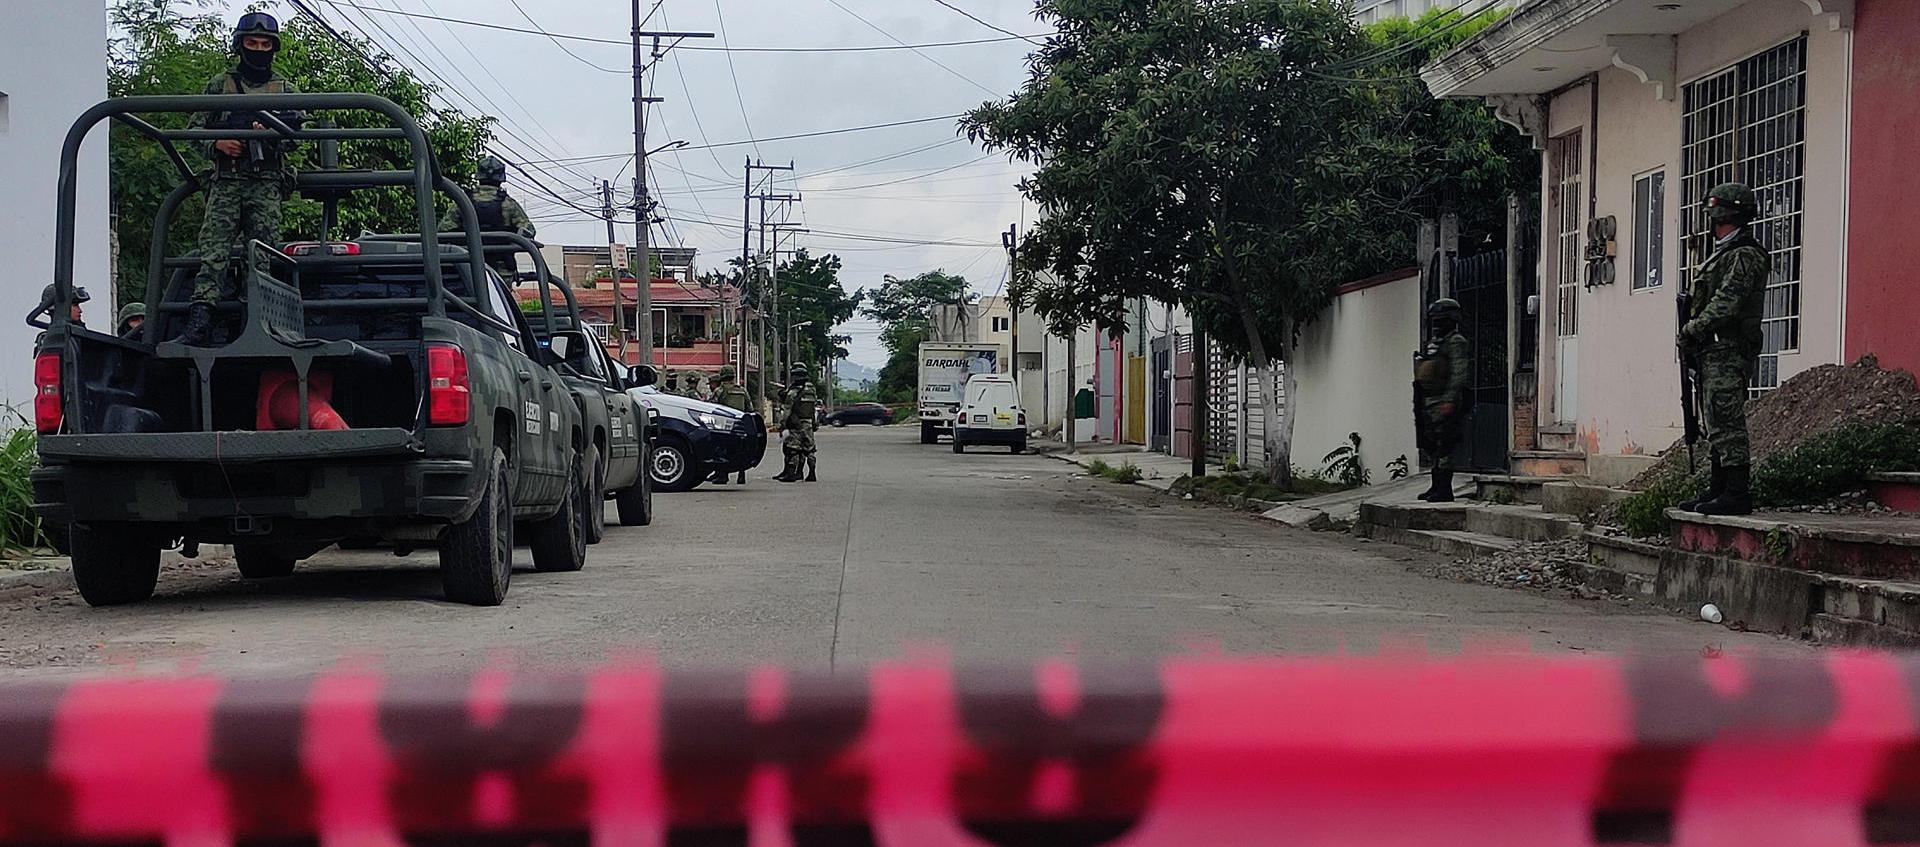 El Ejército vigila la zona en donde se localizaron varios cuerpos desmembrados, en Poza Rica, estado de Veracruz.